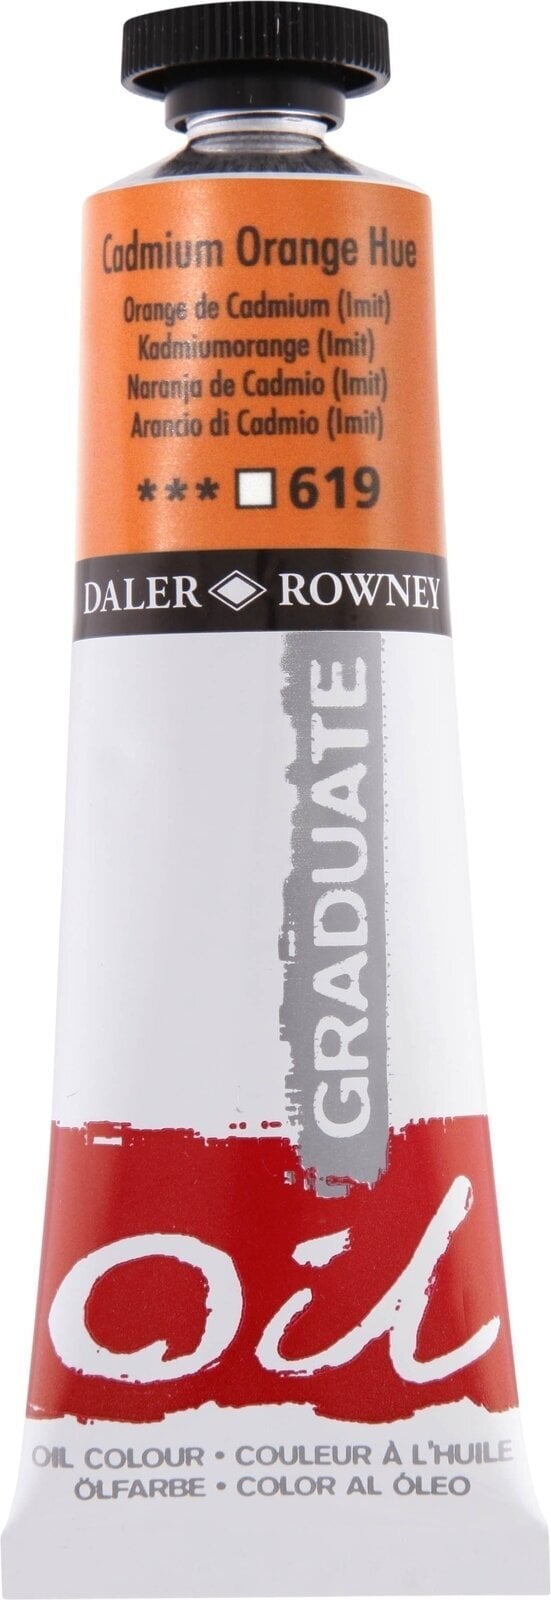 Oil colour Daler Rowney Graduate Oil Paint Cadmium Orangee Hue 38 ml 1 pc